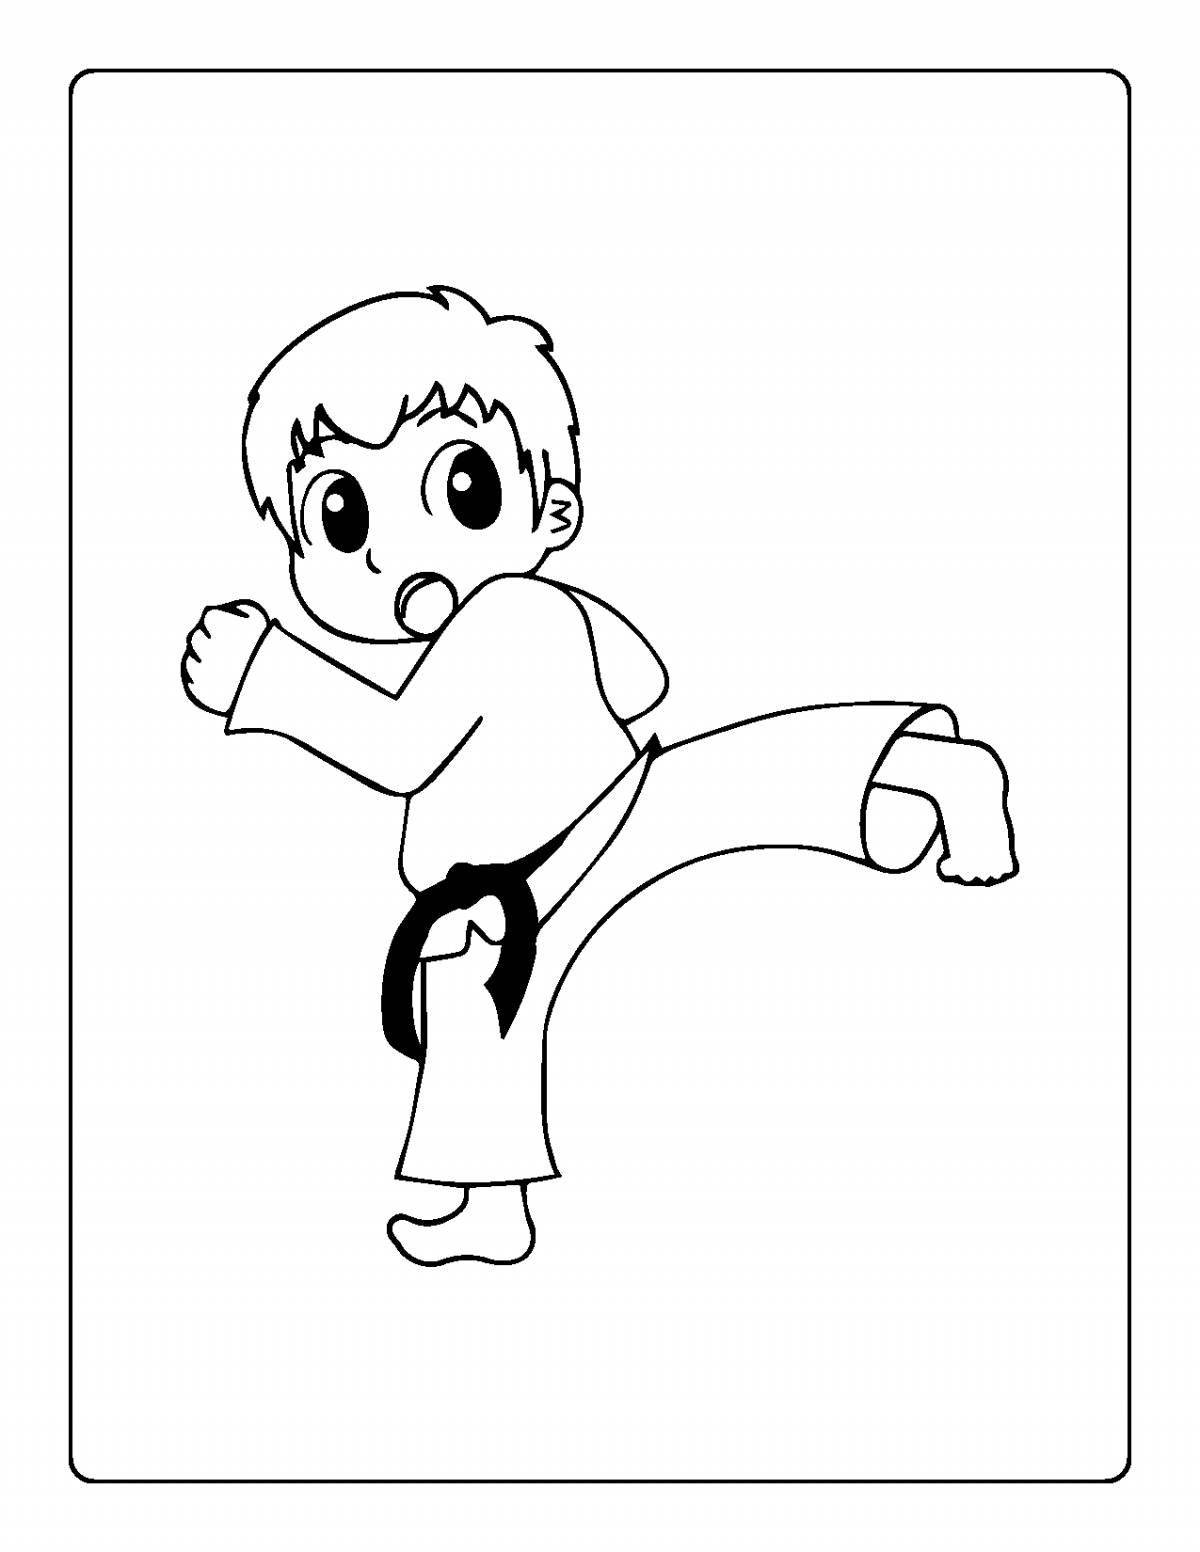 Dynamic coloring of judokas